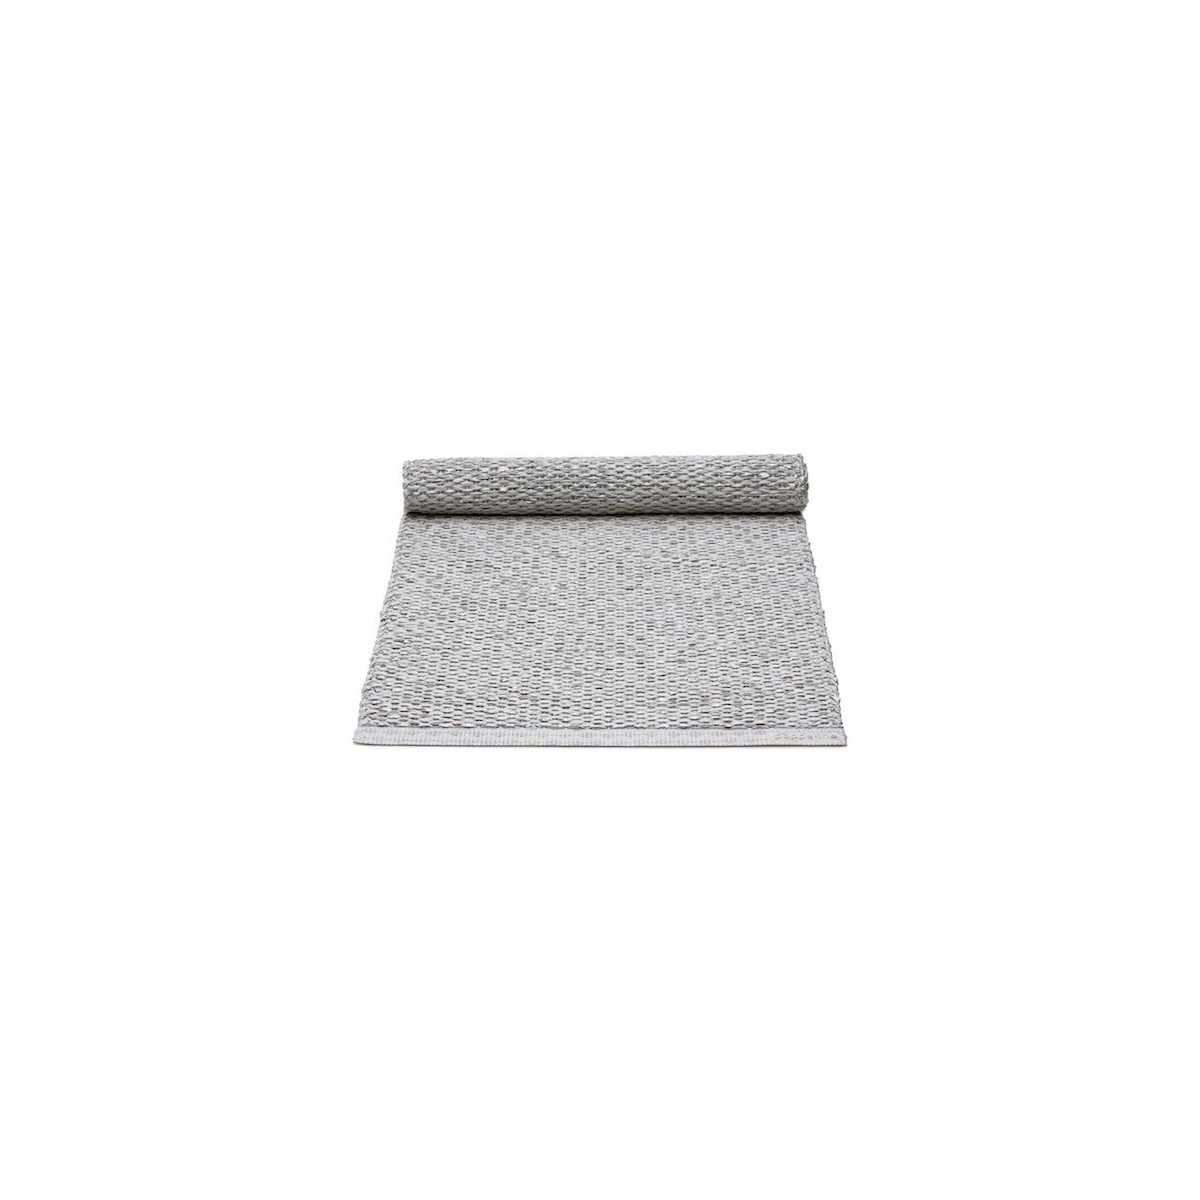 36x130cm - gris métallique / gris clair - chemin de table Svea*